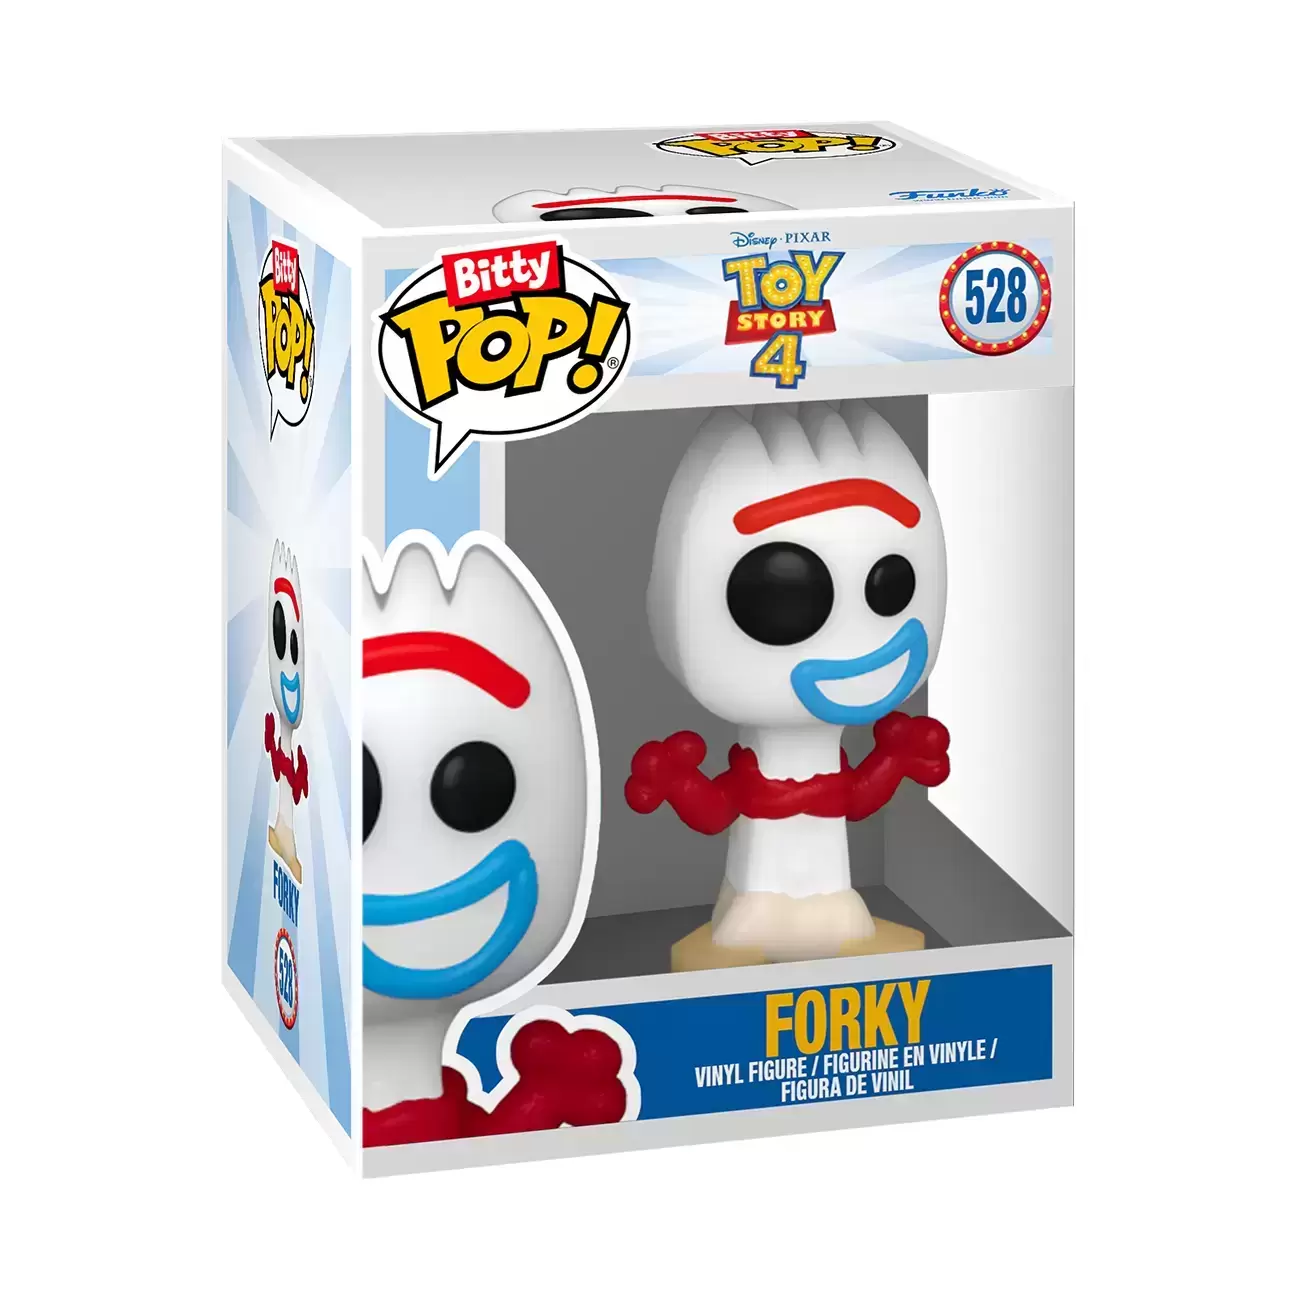 Bitty POP! - Toy Story - Forky